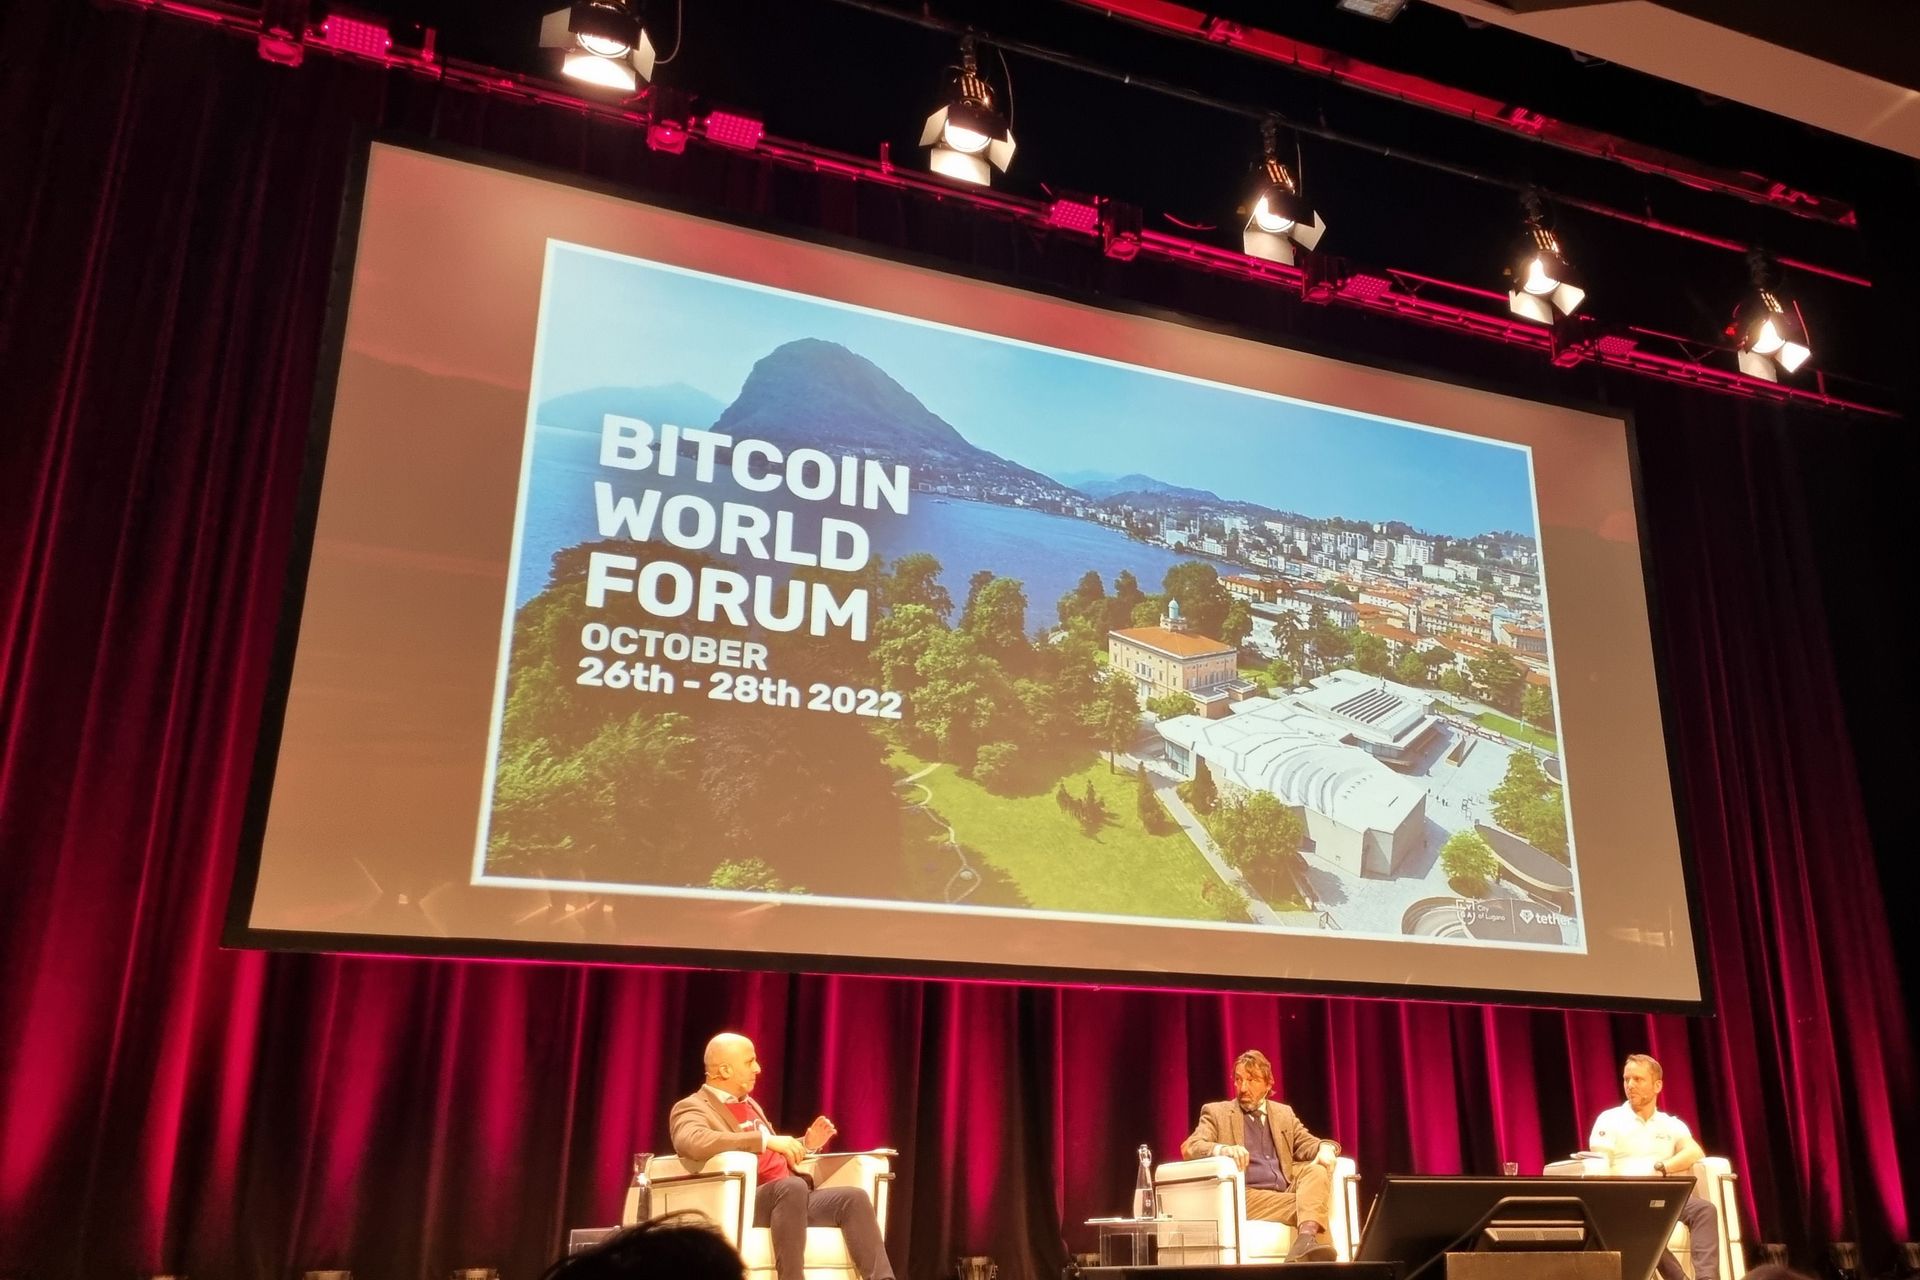 La presentazione del "Bitcoin World Forum", che si terrà a Lugano nel Canton Ticino dal 26 al 28 ottobre 2022